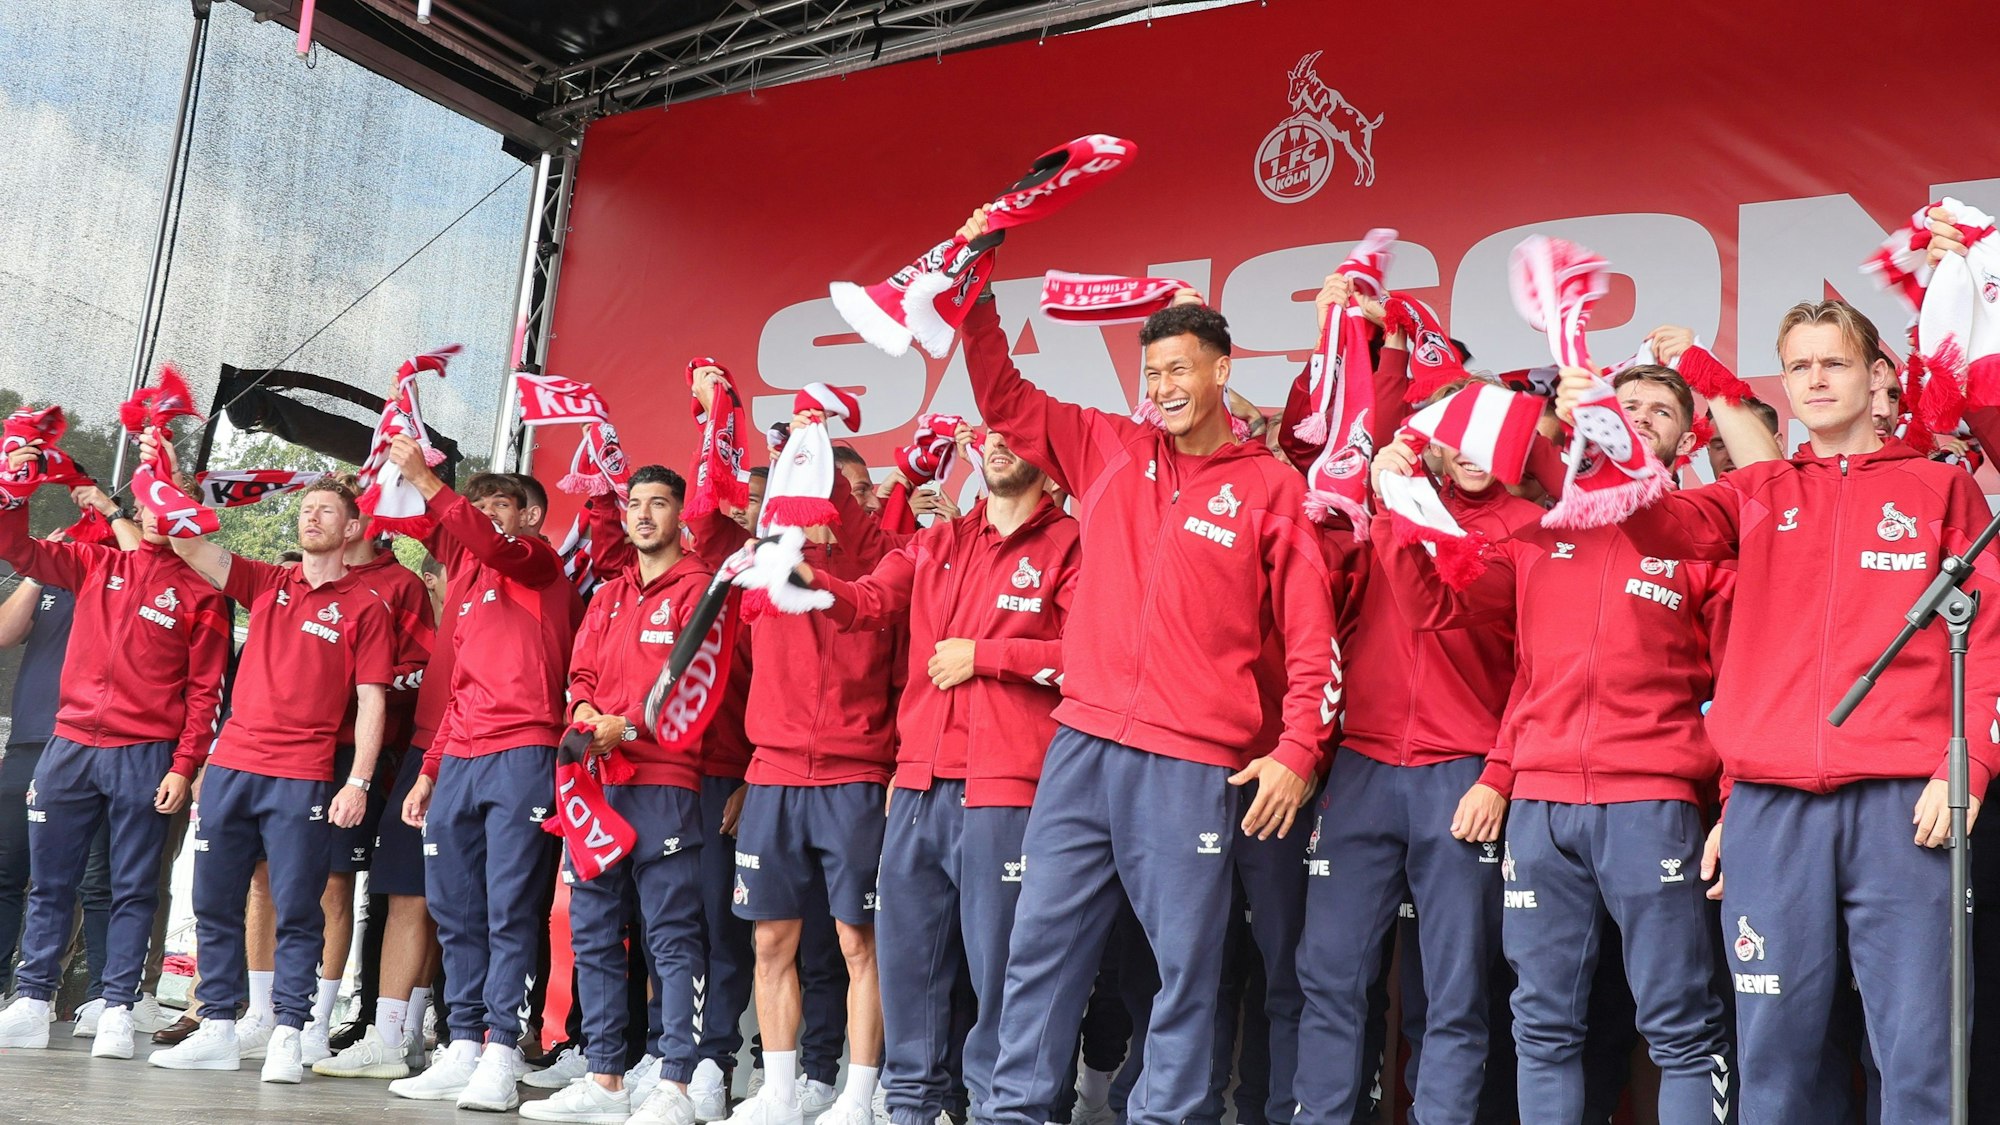 Die Mannschaft des 1. FC Köln singt die FC-Hymne auf einer Bühne.